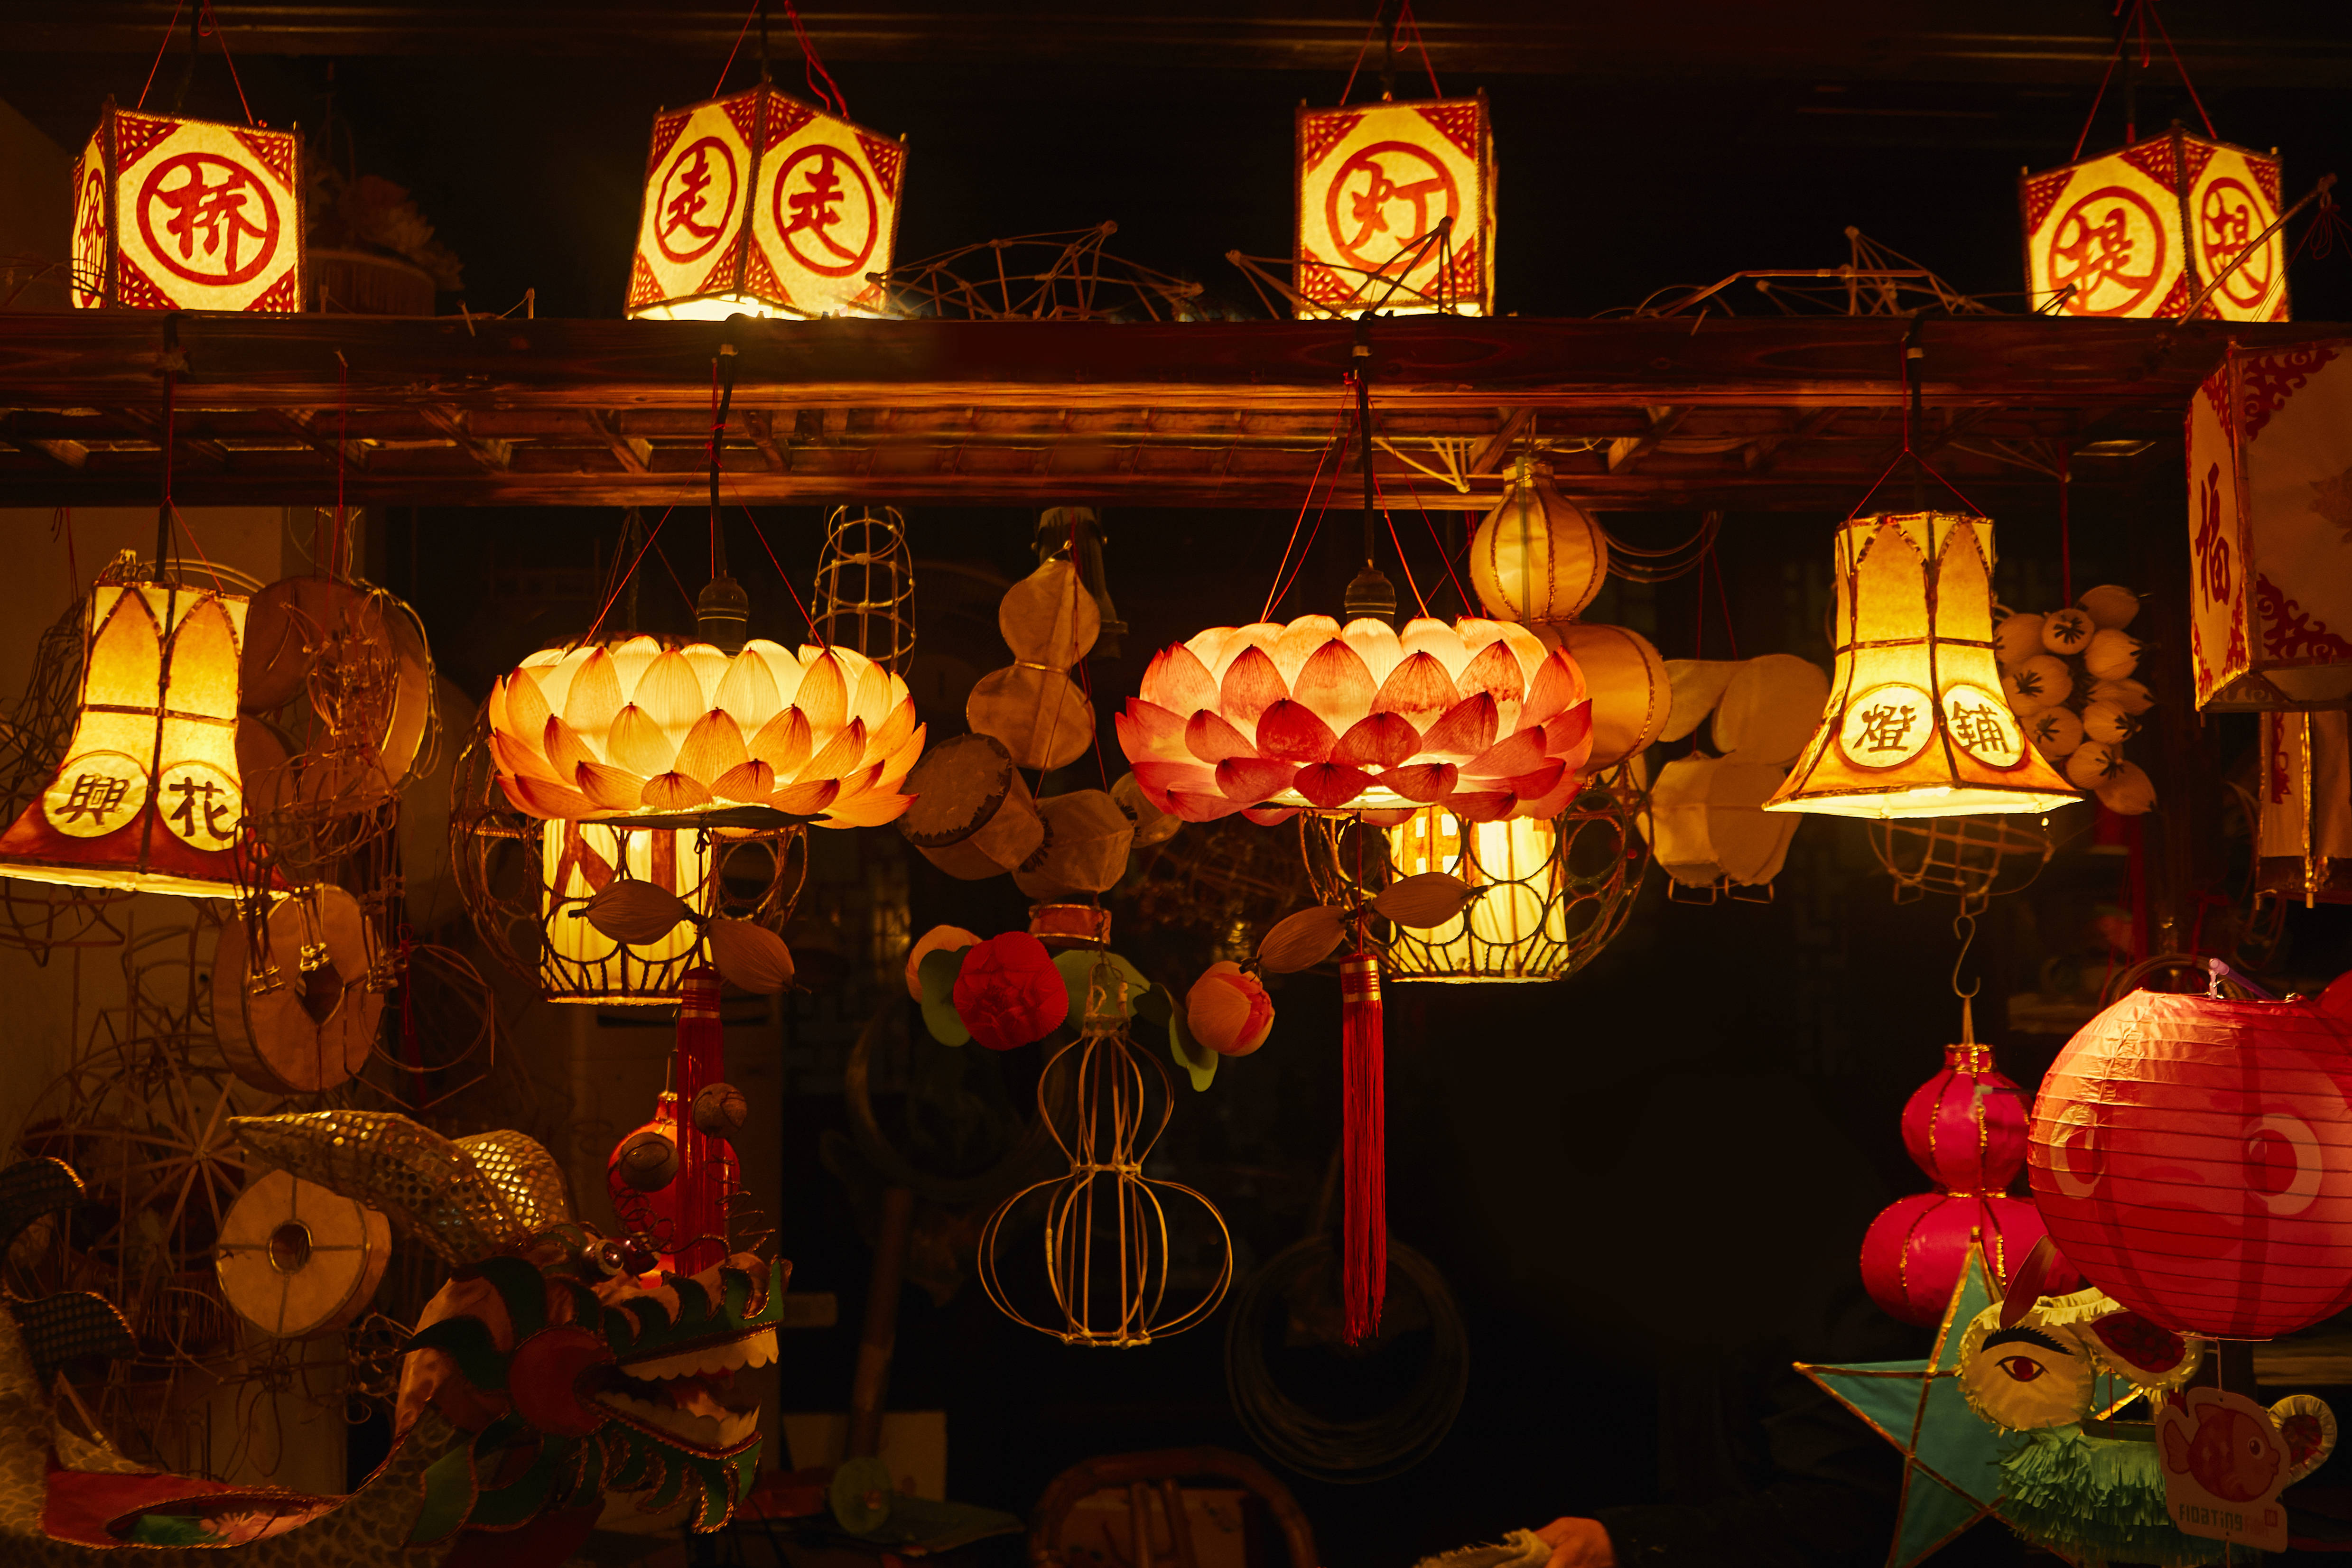 元宵节也是天官赐福之日,所以人们张灯,闹花灯是元宵节传统节日习俗